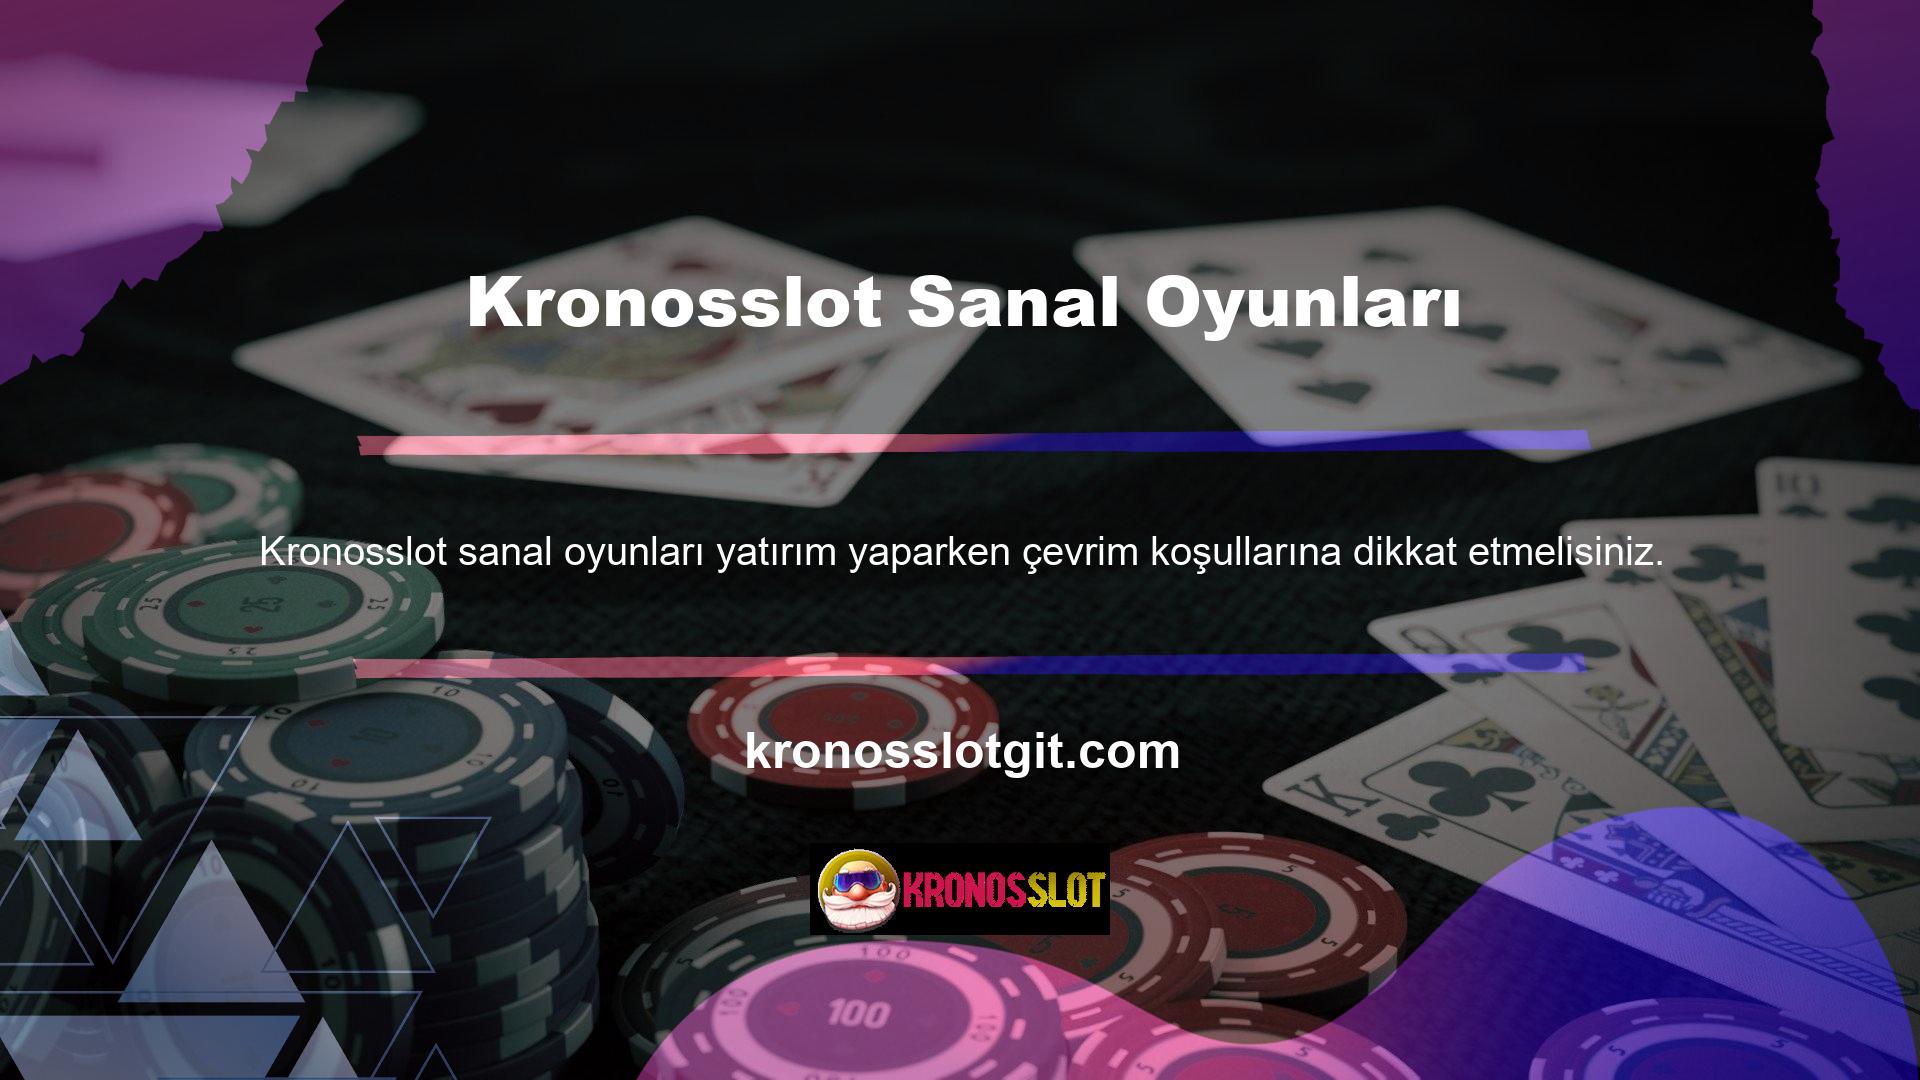 Kronosslot sitelerinde Kronosslot oyunları da bulunmaktadır